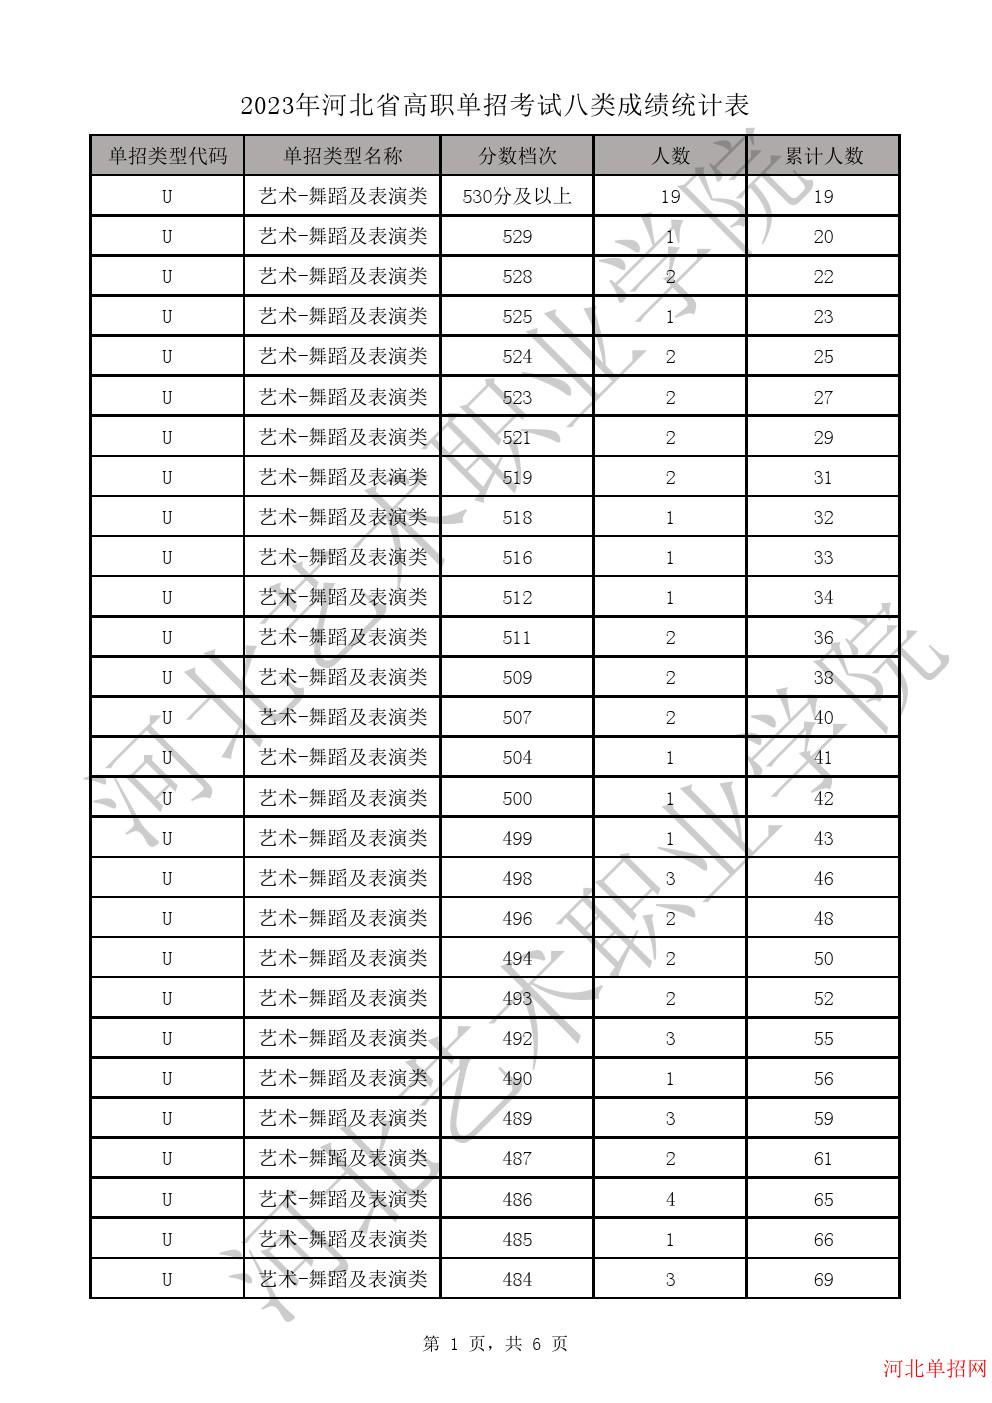 2023年河北省高职单招考试八类成绩统计表-U艺术-舞蹈及表演类一分一档表 图1